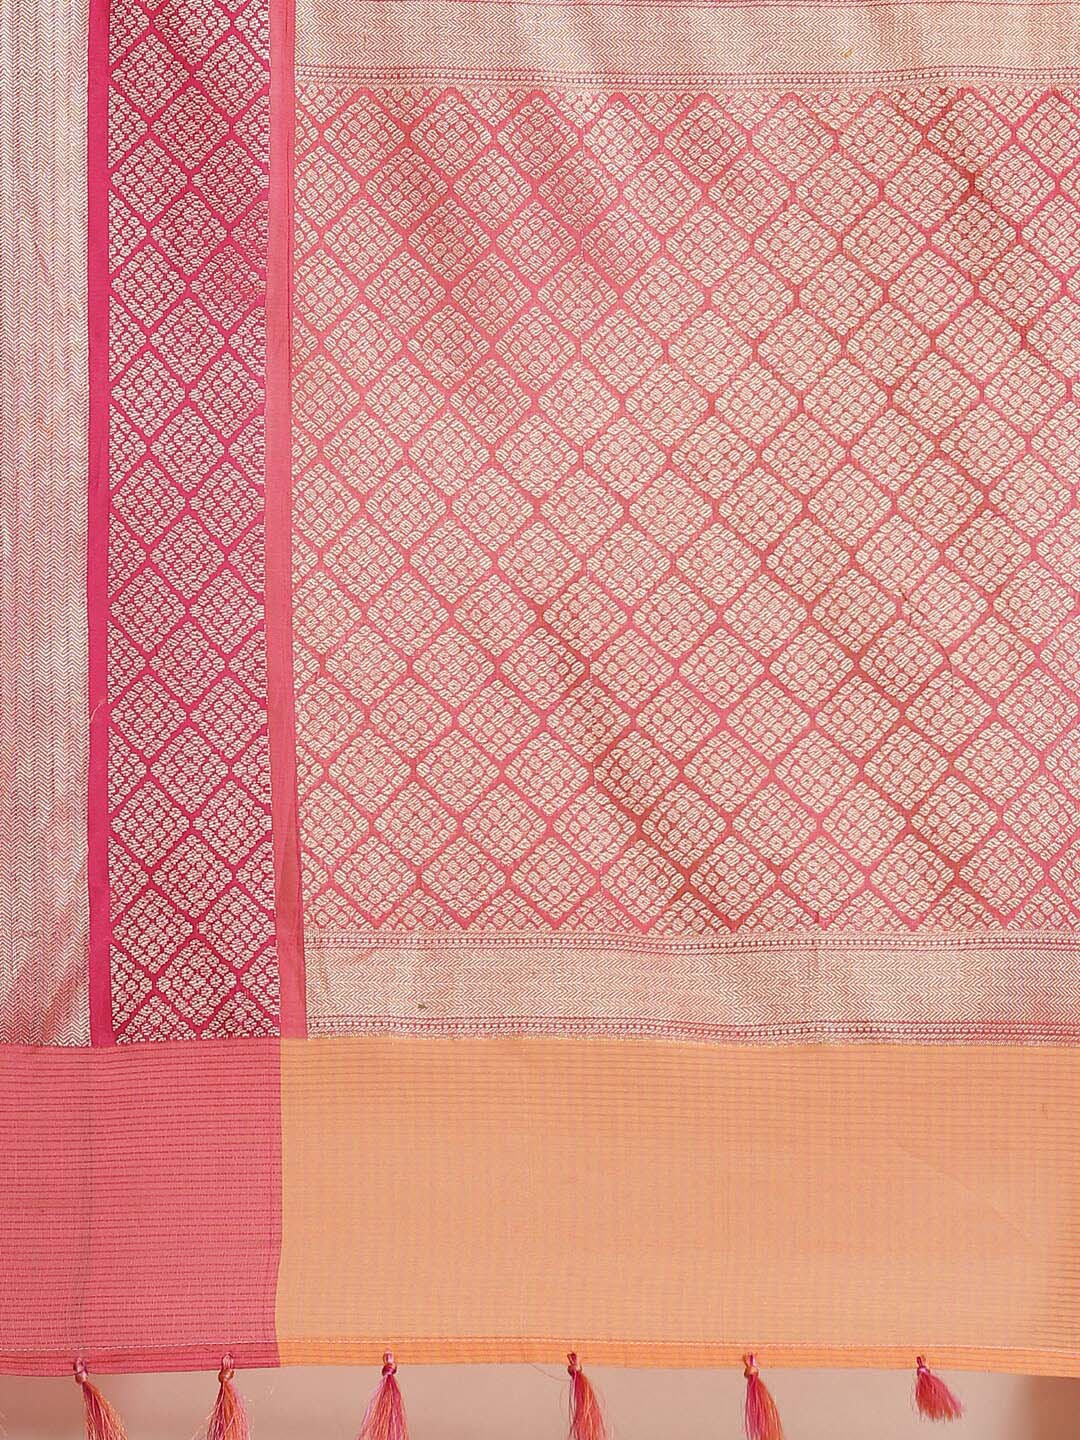 Indethnic Banarasi Peach Woven Design Daily Wear Saree - Saree Detail View